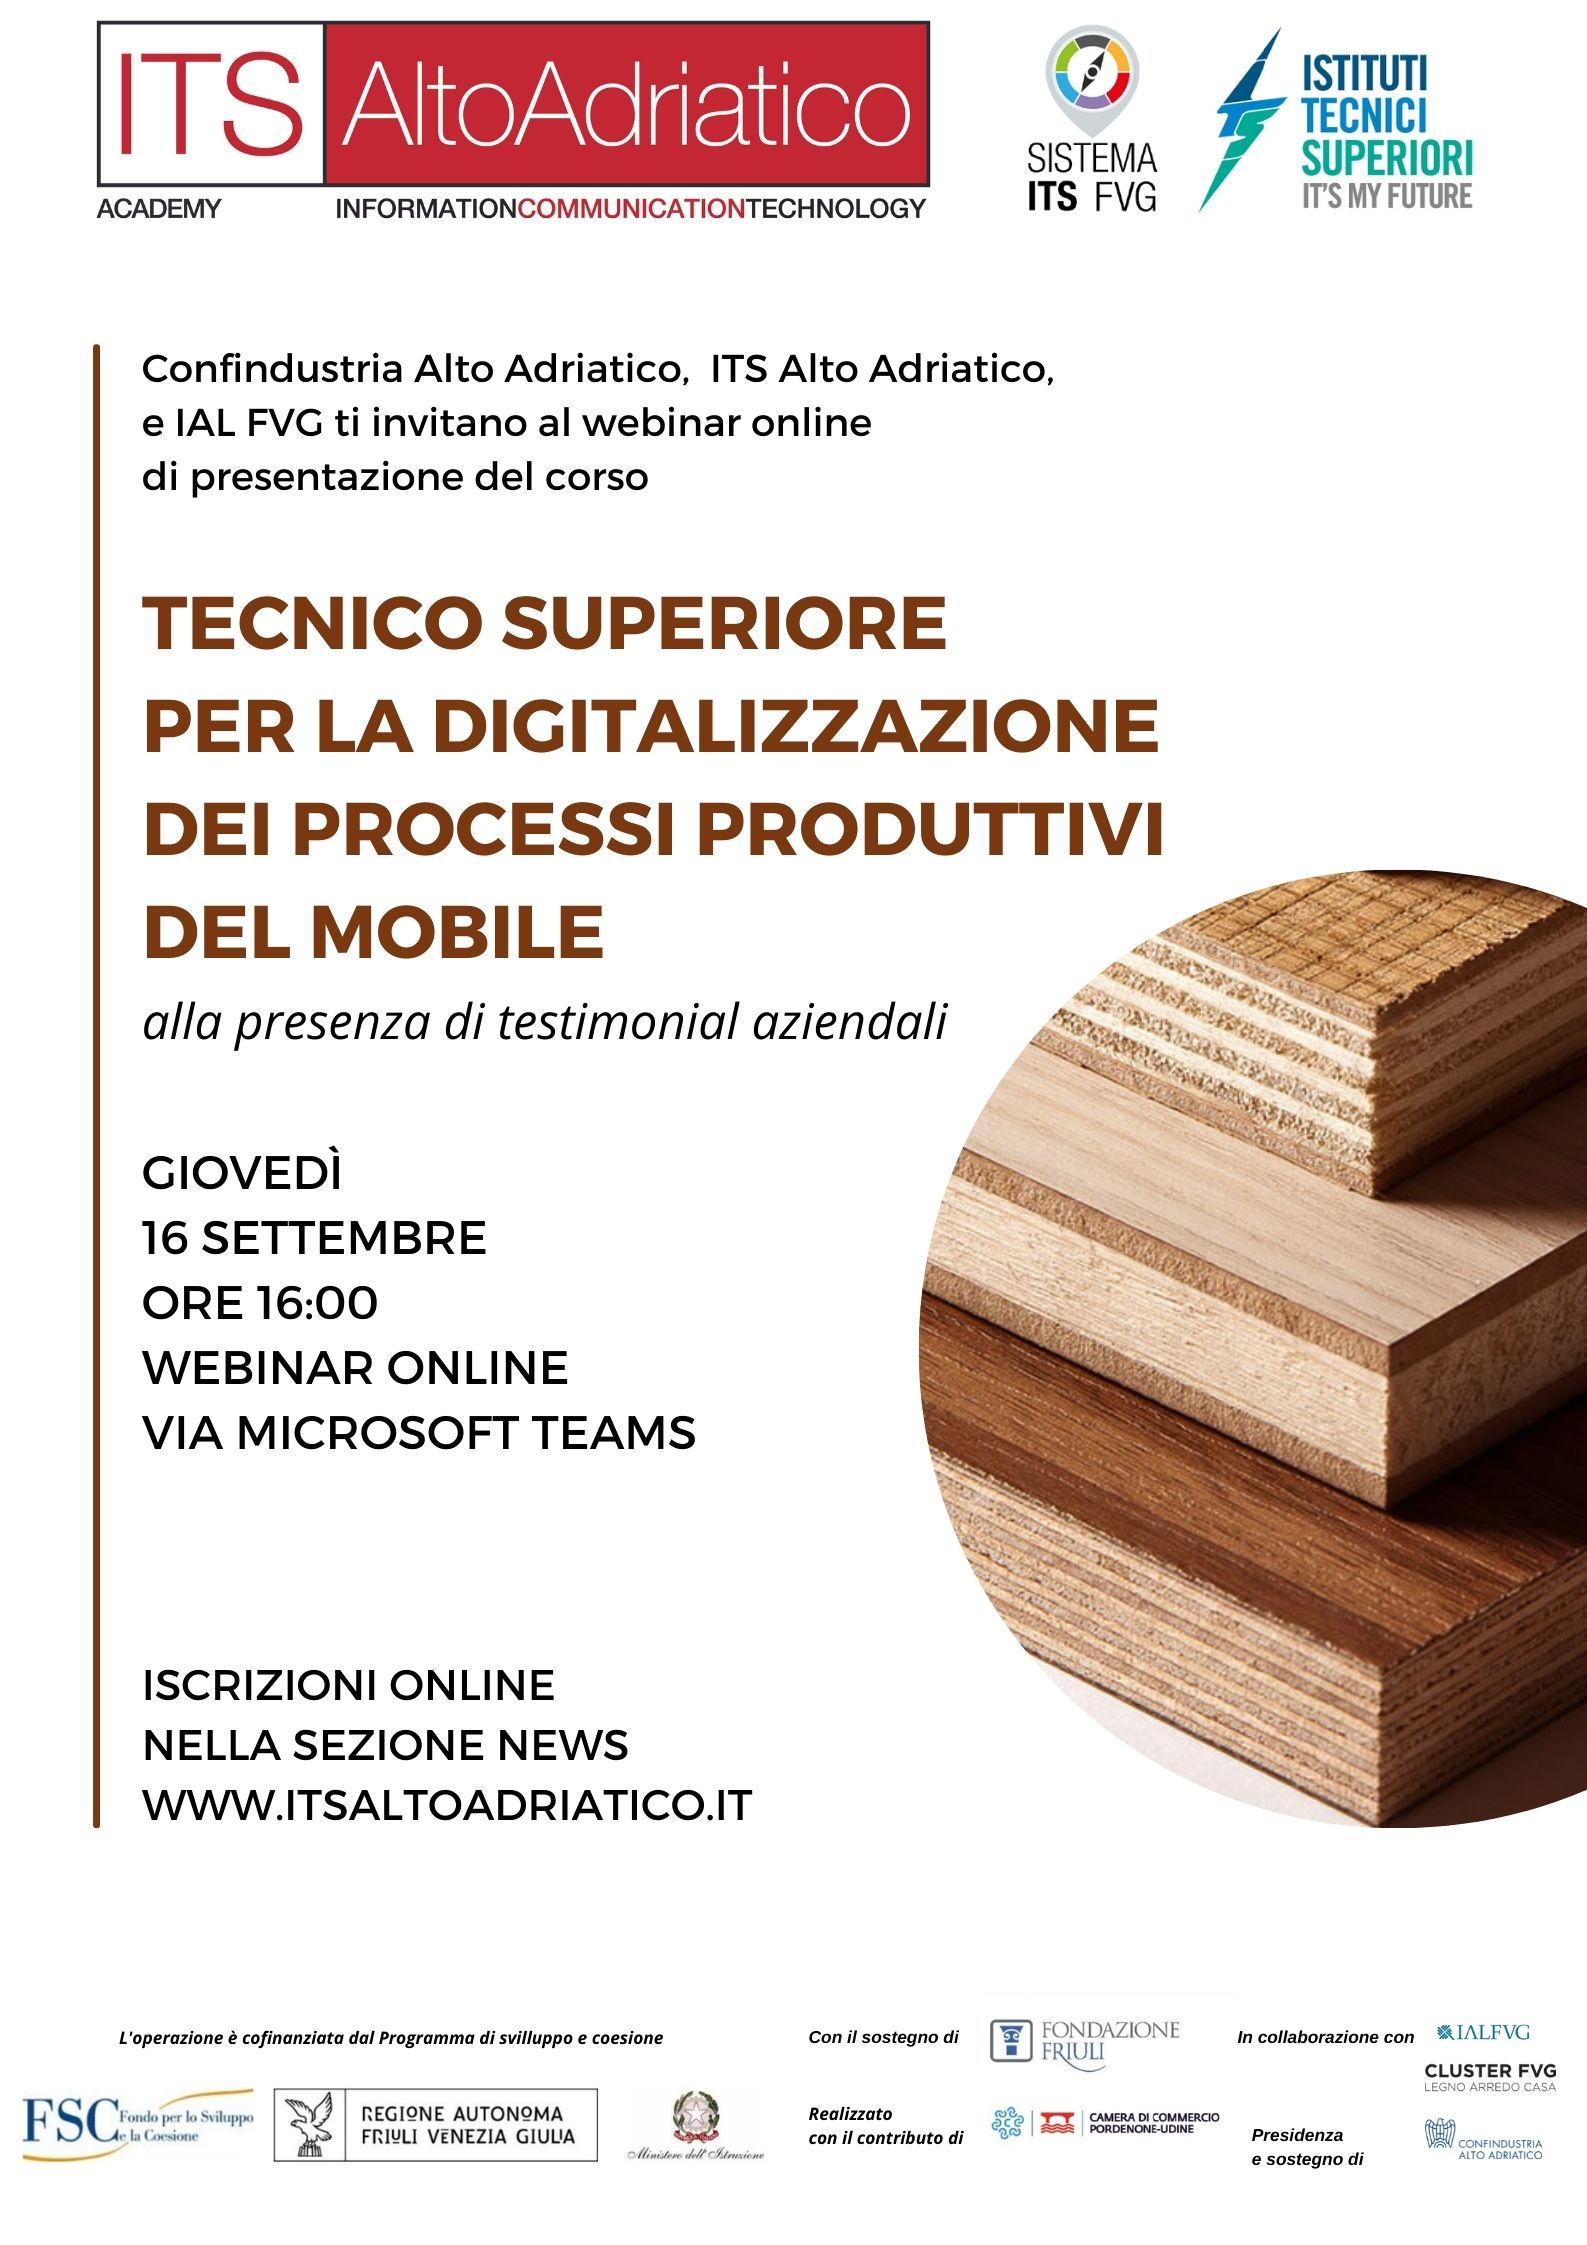 Giovedì 16 settembre anteprima del 1° corso ITS in Italia dedicato all’ambito ICT nei processi produttivi del settore mobile